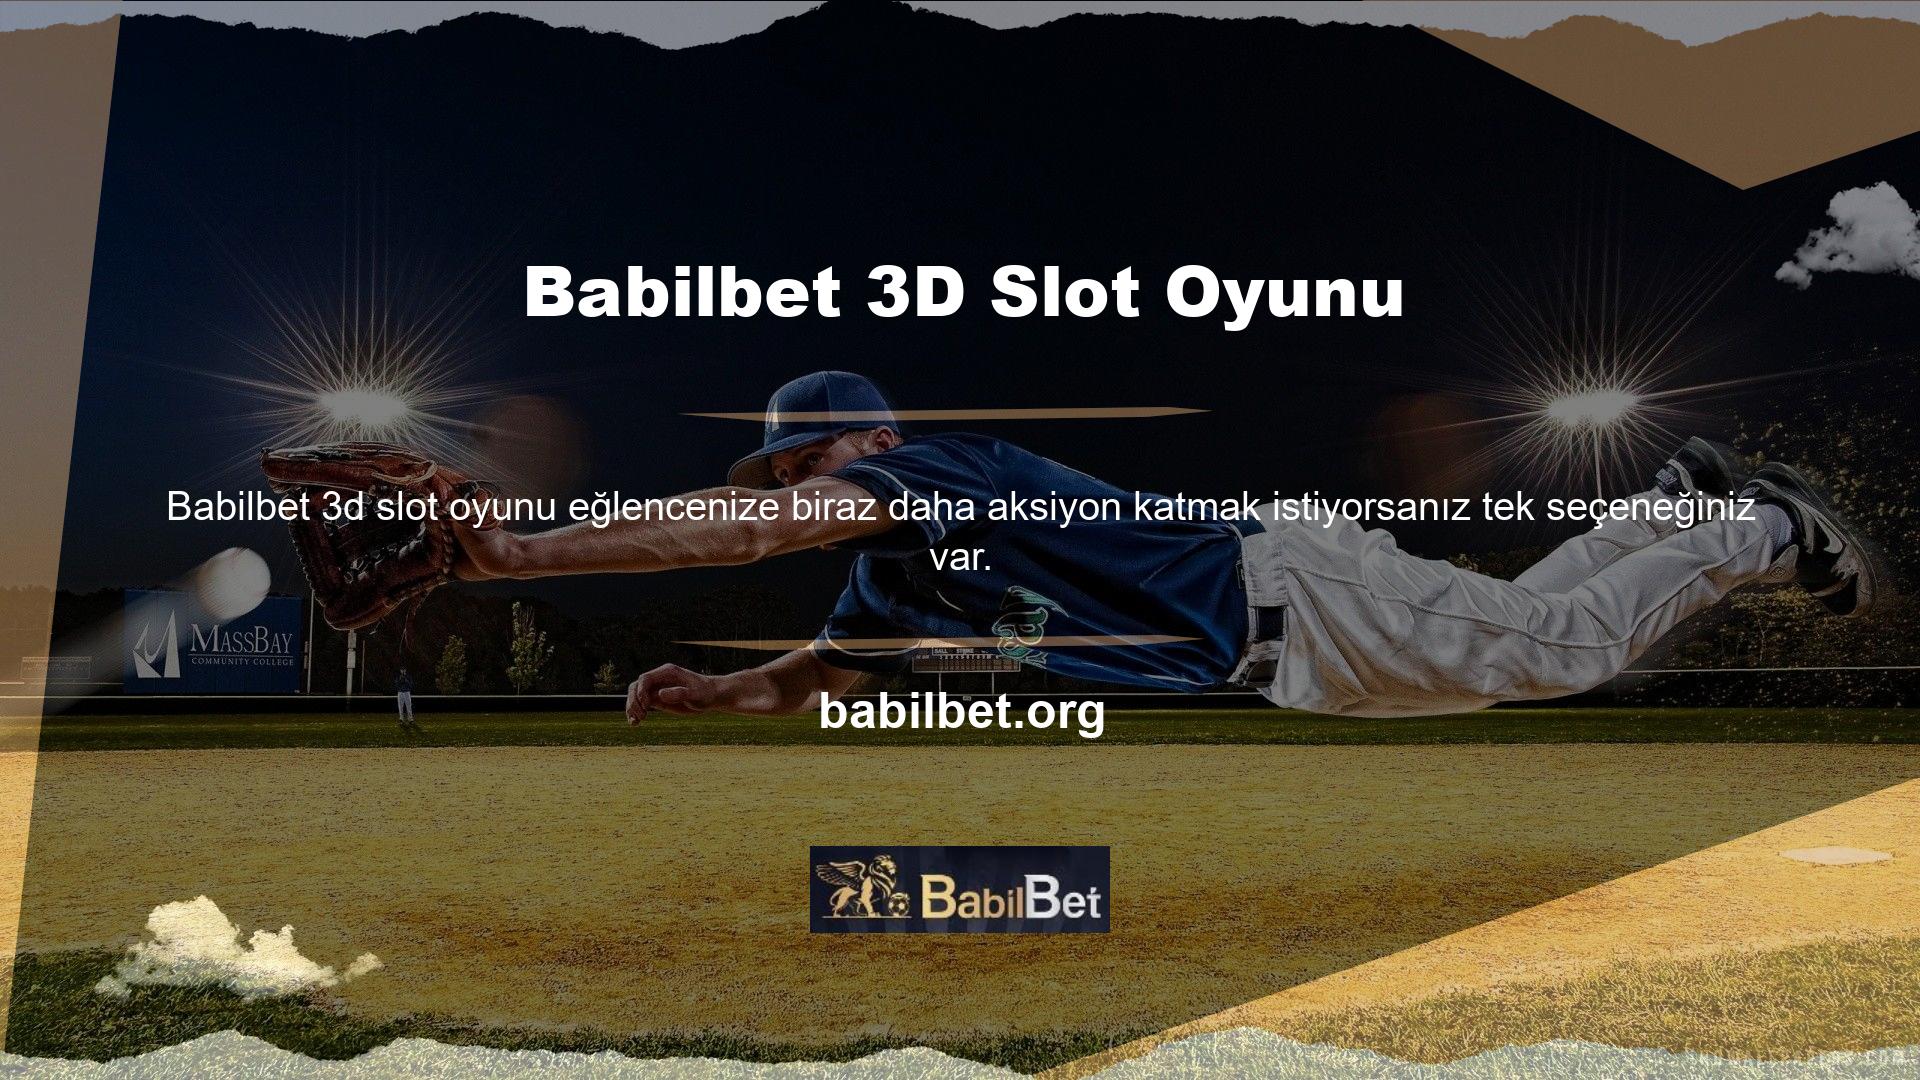 Babilbet 3D Slot Oyunları Artık bu iki katmanlı dünyadan memnun değilseniz, üçüncü boyuta geçme zamanı geldi, burada farklı oyunları deneyebilir ve size en fazla geliri sağlayacak olanı deneme yanılma yoluyla bulabilirsiniz